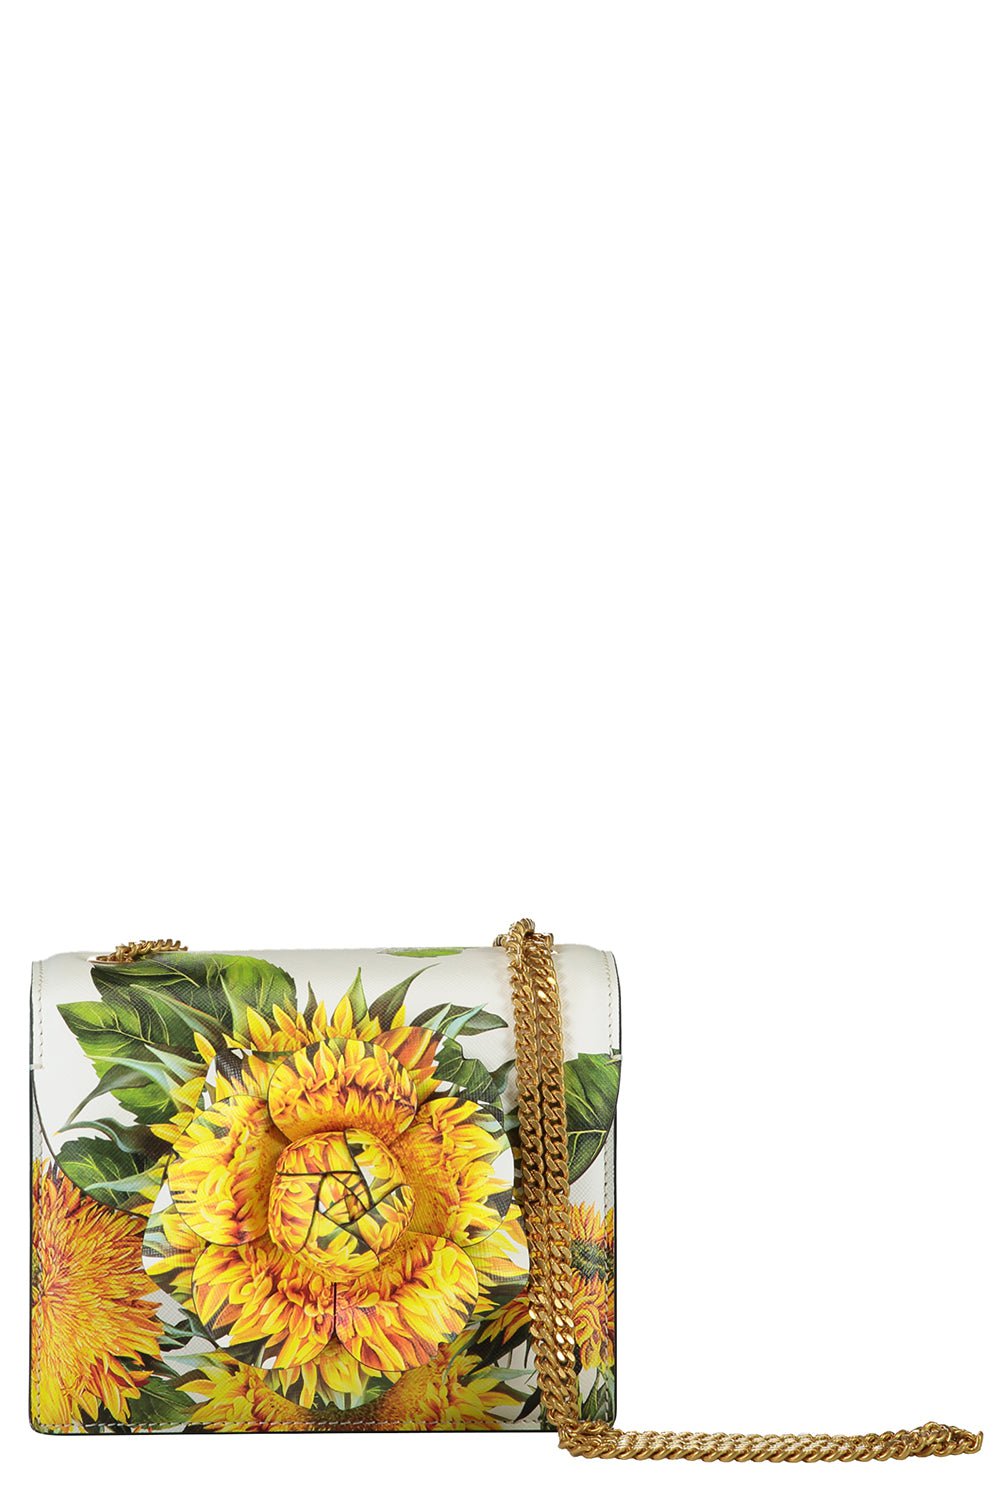 OSCAR DE LA RENTA-Mini Tro Bag - Sunflower-SUNFLOWER